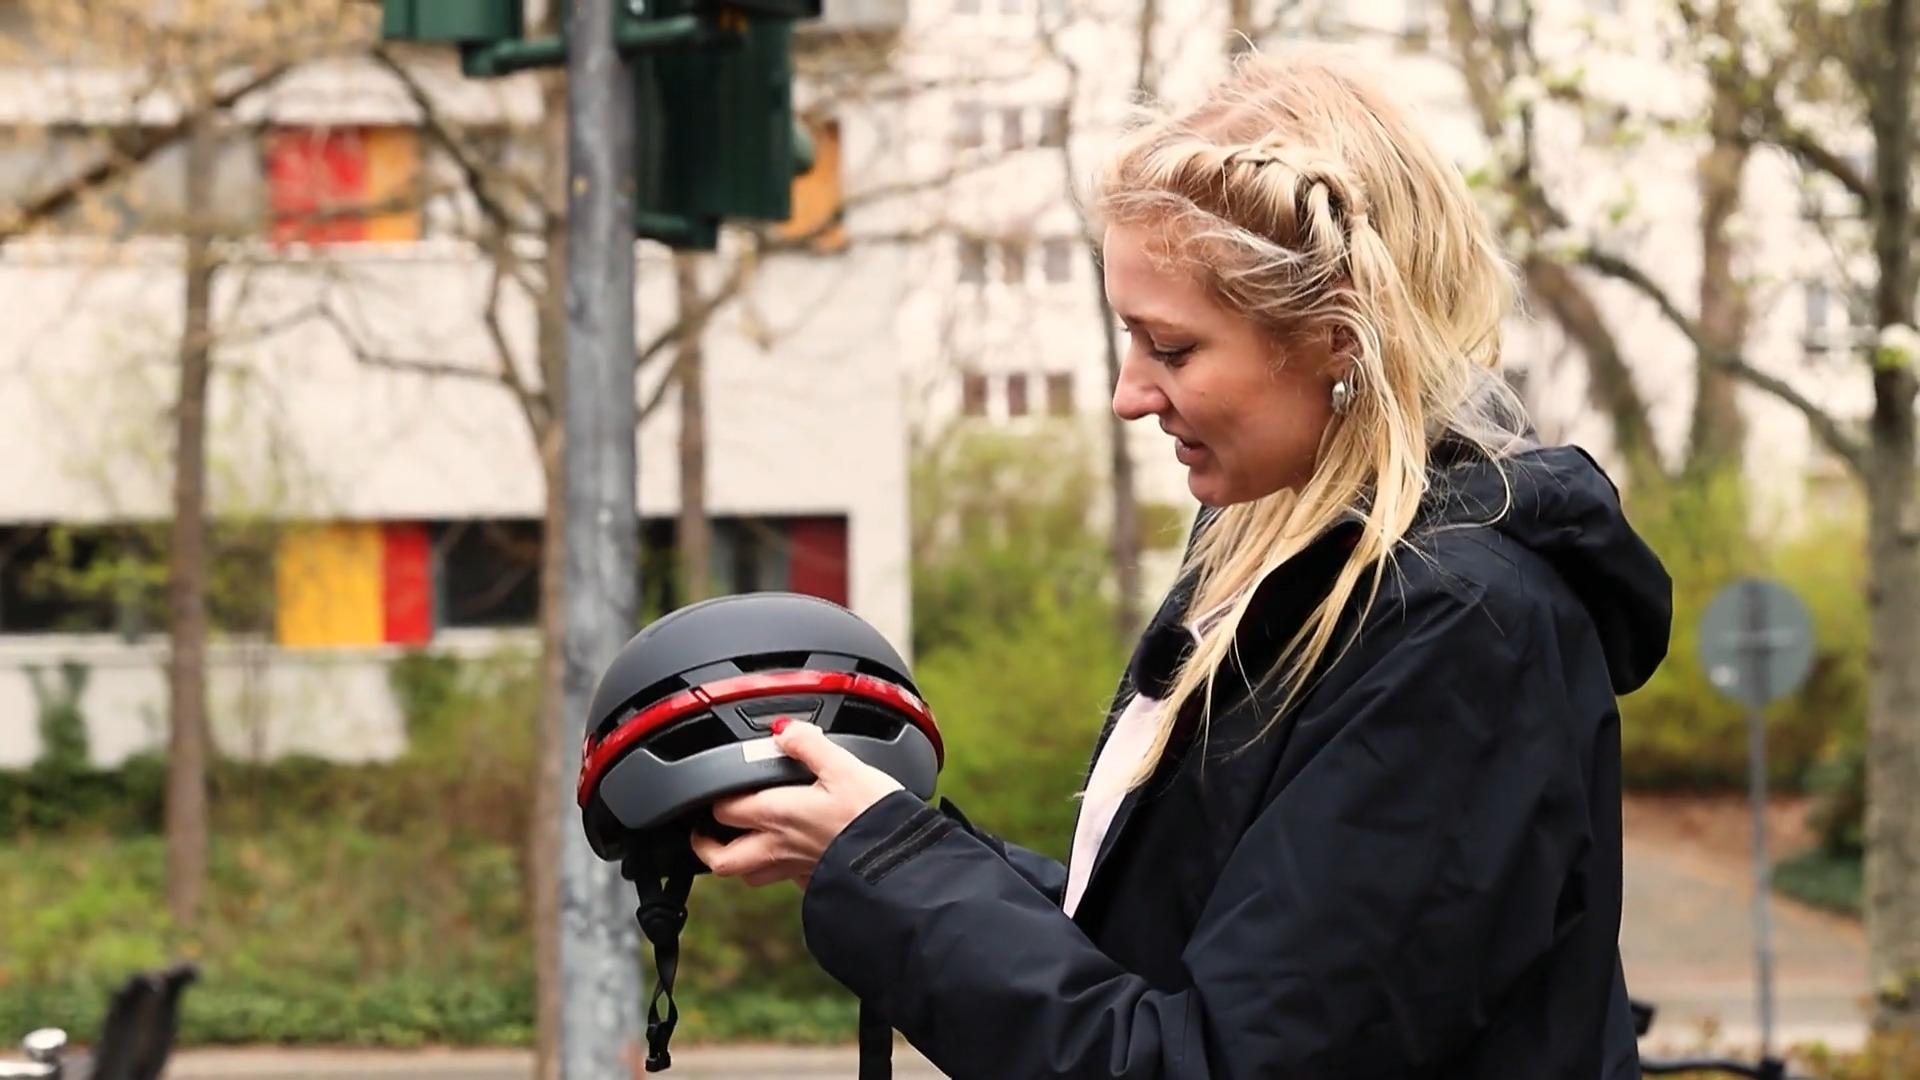 Helme, Blinker & Co.: Was taugen die smarten Fahrradgadgets? So smart wie versprochen?